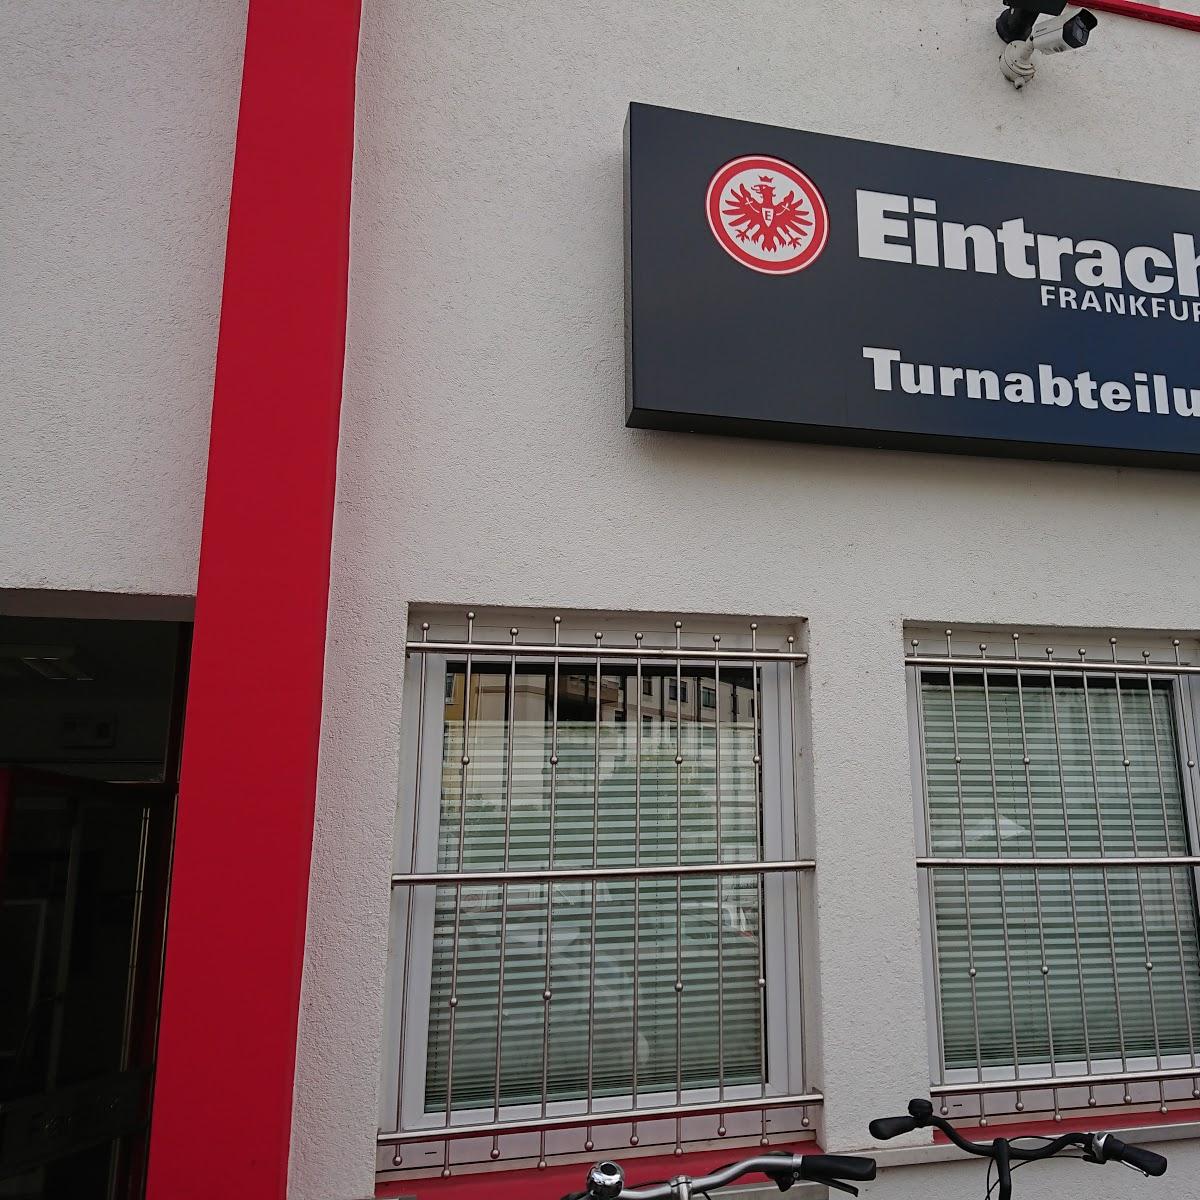 Restaurant "Gaststätte Eintracht Frankfurt" in Frankfurt am Main